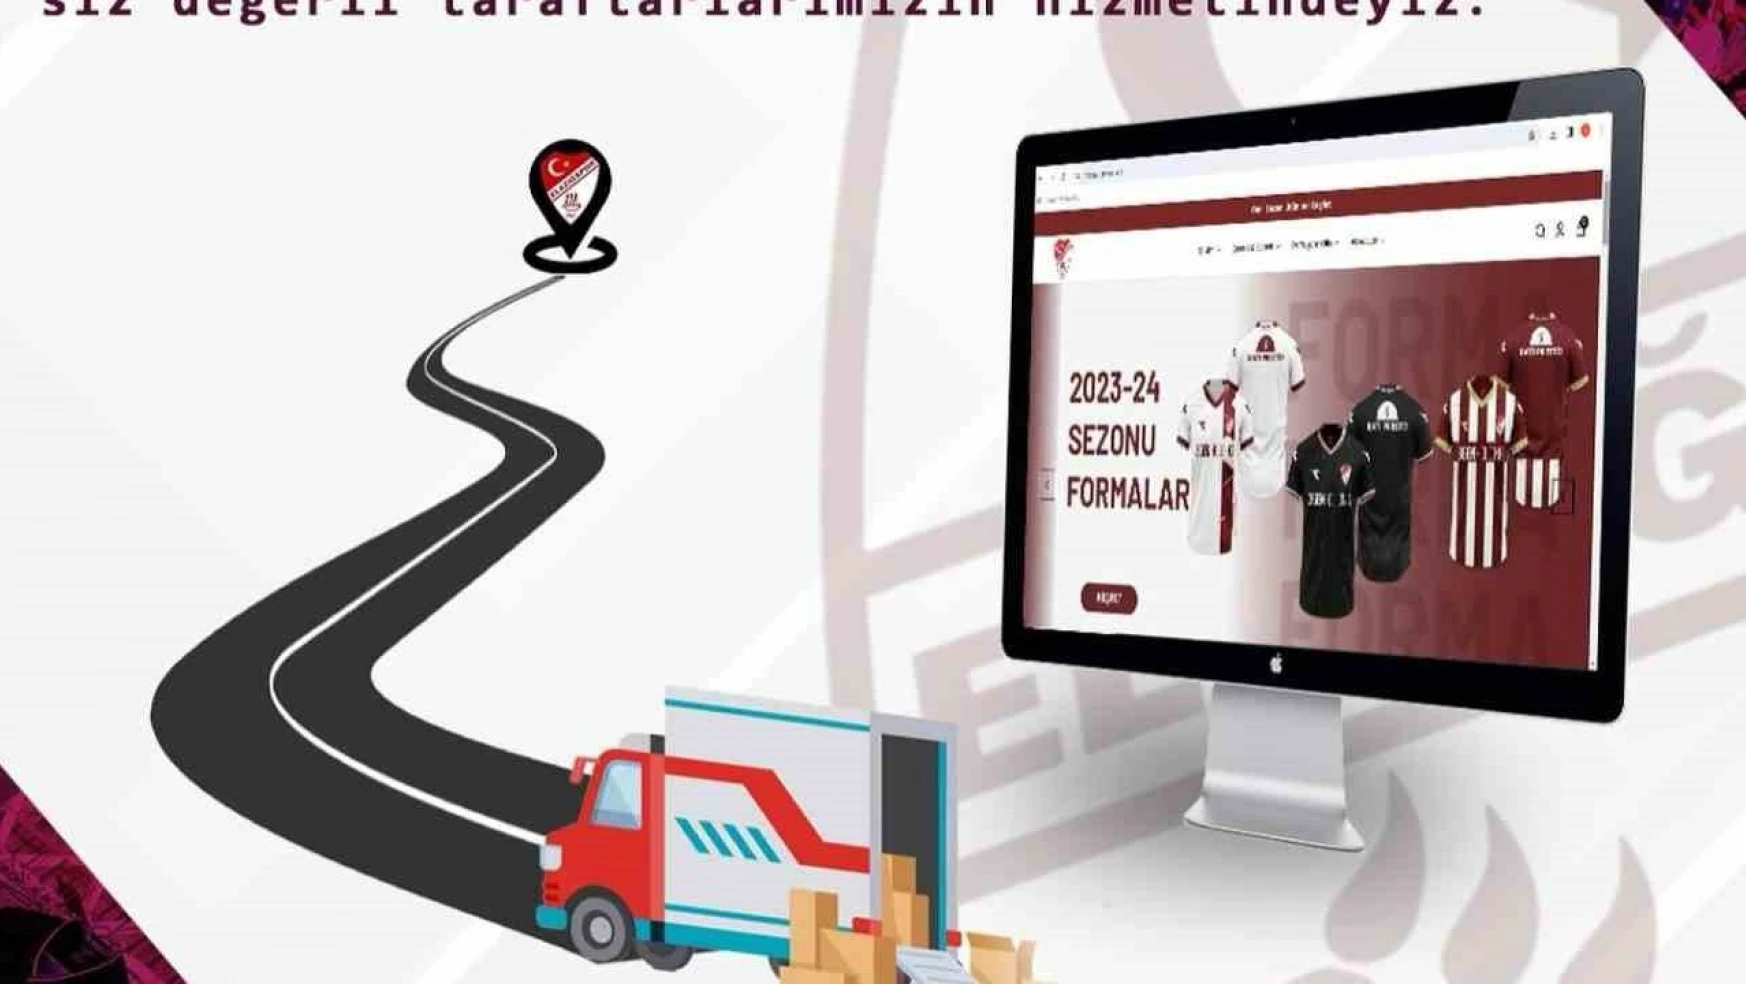 Elazığspor Store online satışlara başladı